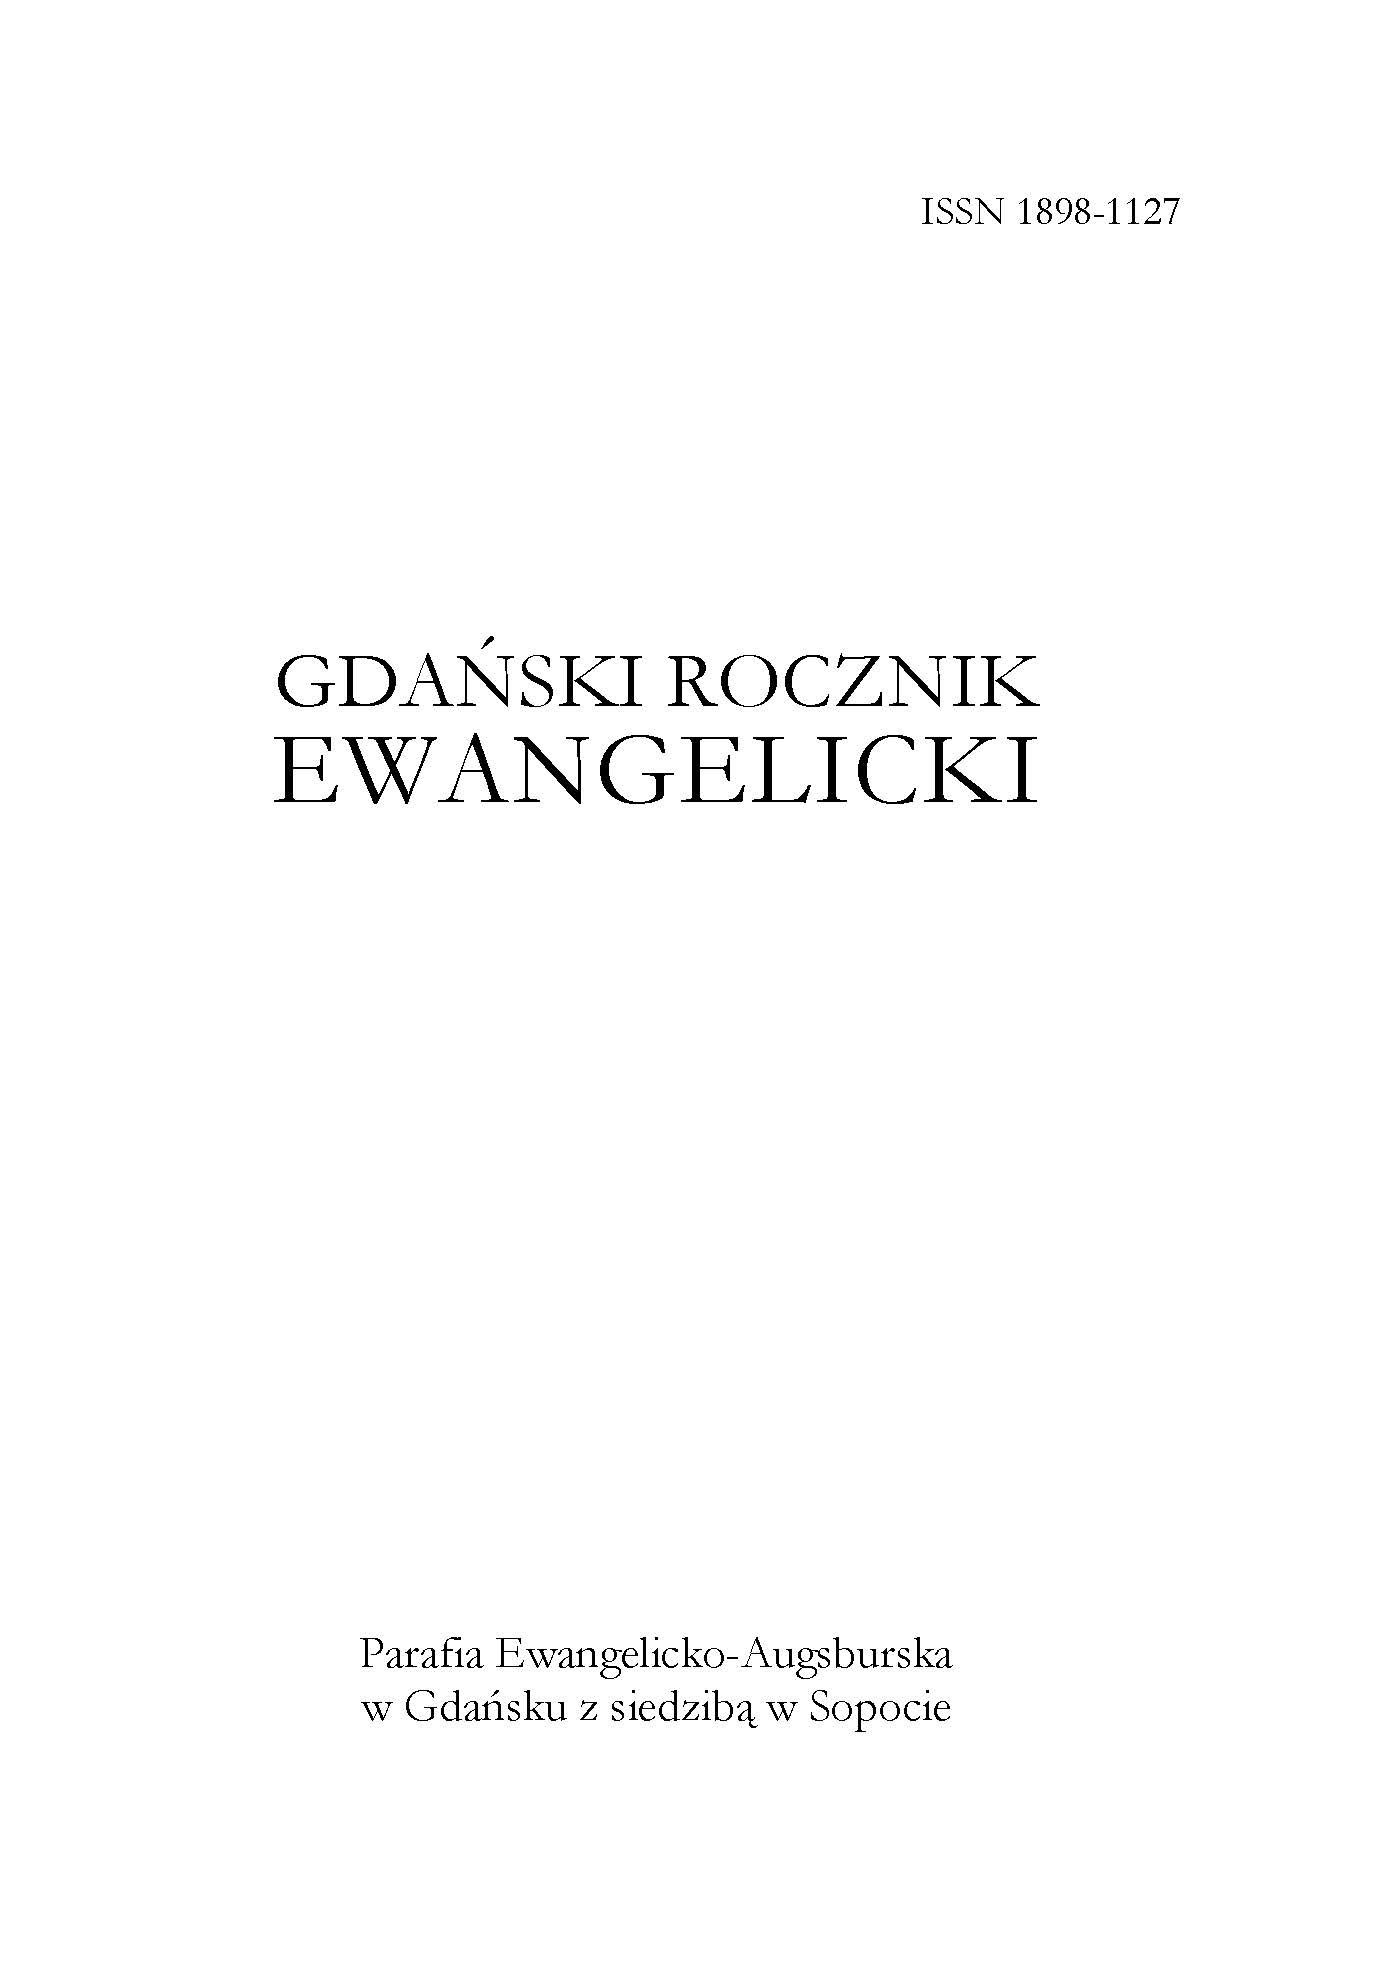 Kronika Parafii Ewangelicko-Augsburskiej w Gdańsku z siedzibą w Sopocie za rok 2018